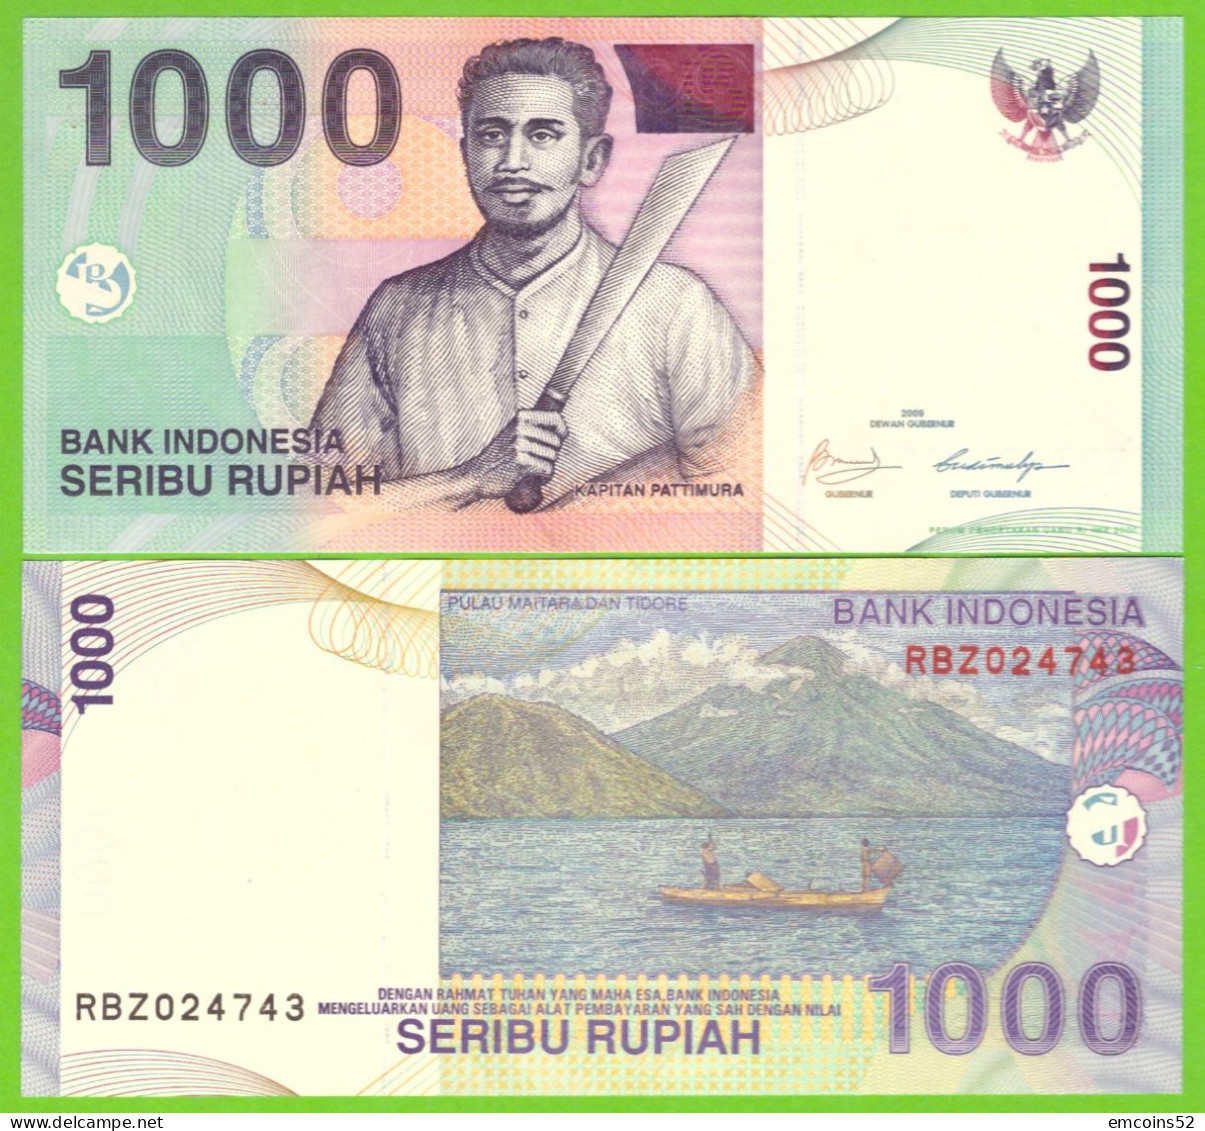 INDONESIA 1000 RUPIAH 2000/2009  P-141j UNC - Indonesia